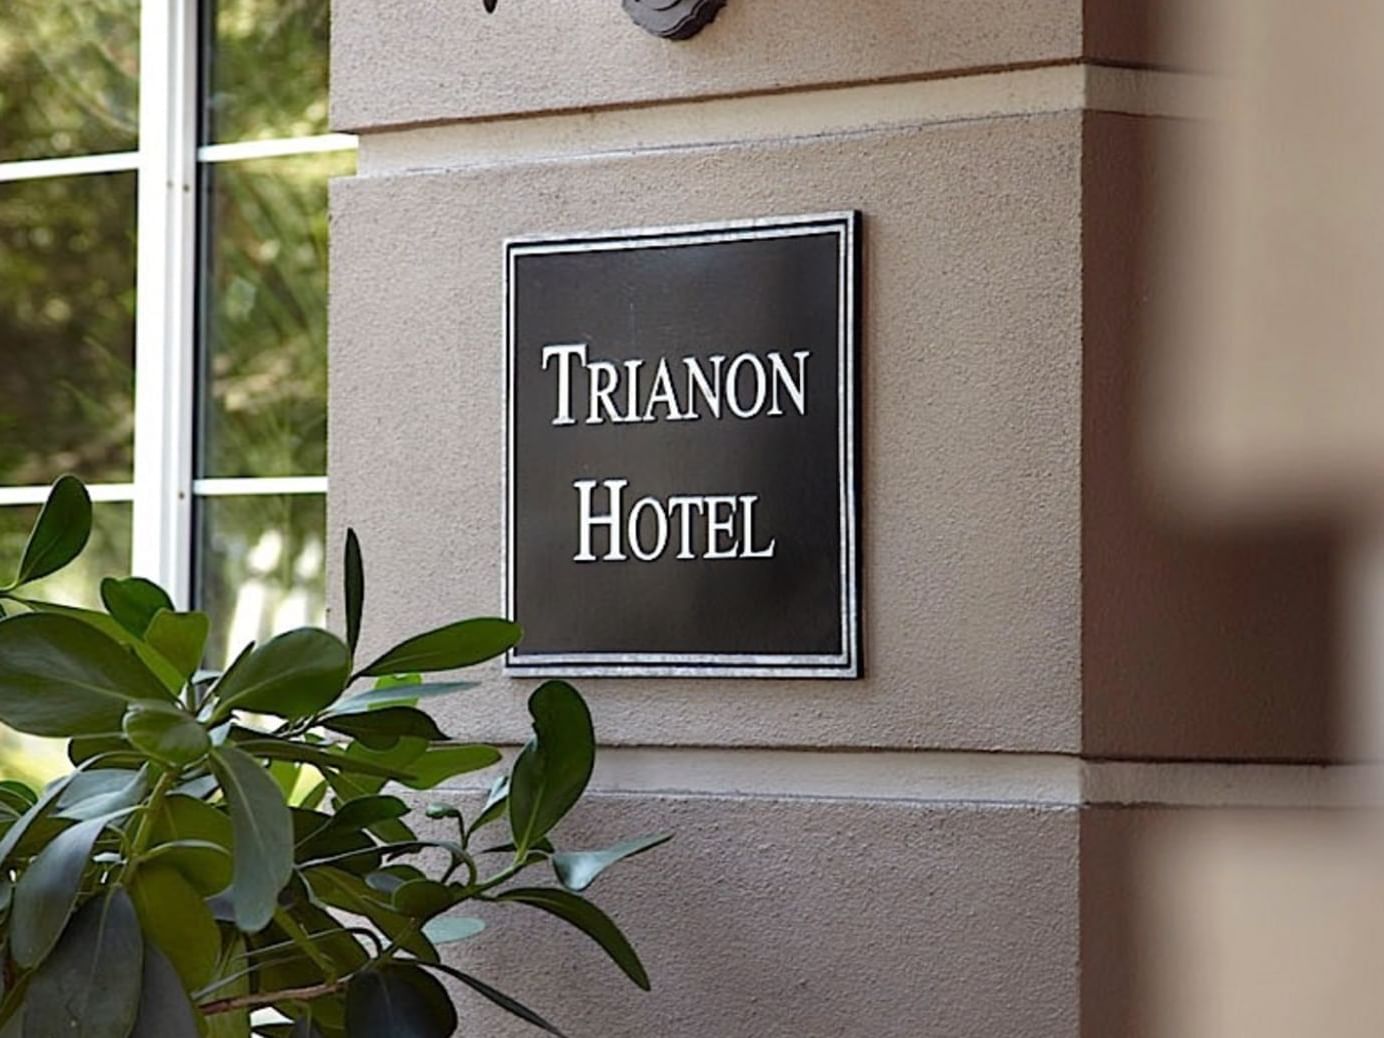 Trianon Hotel sign board on a wall at Trianon Bonita Bay